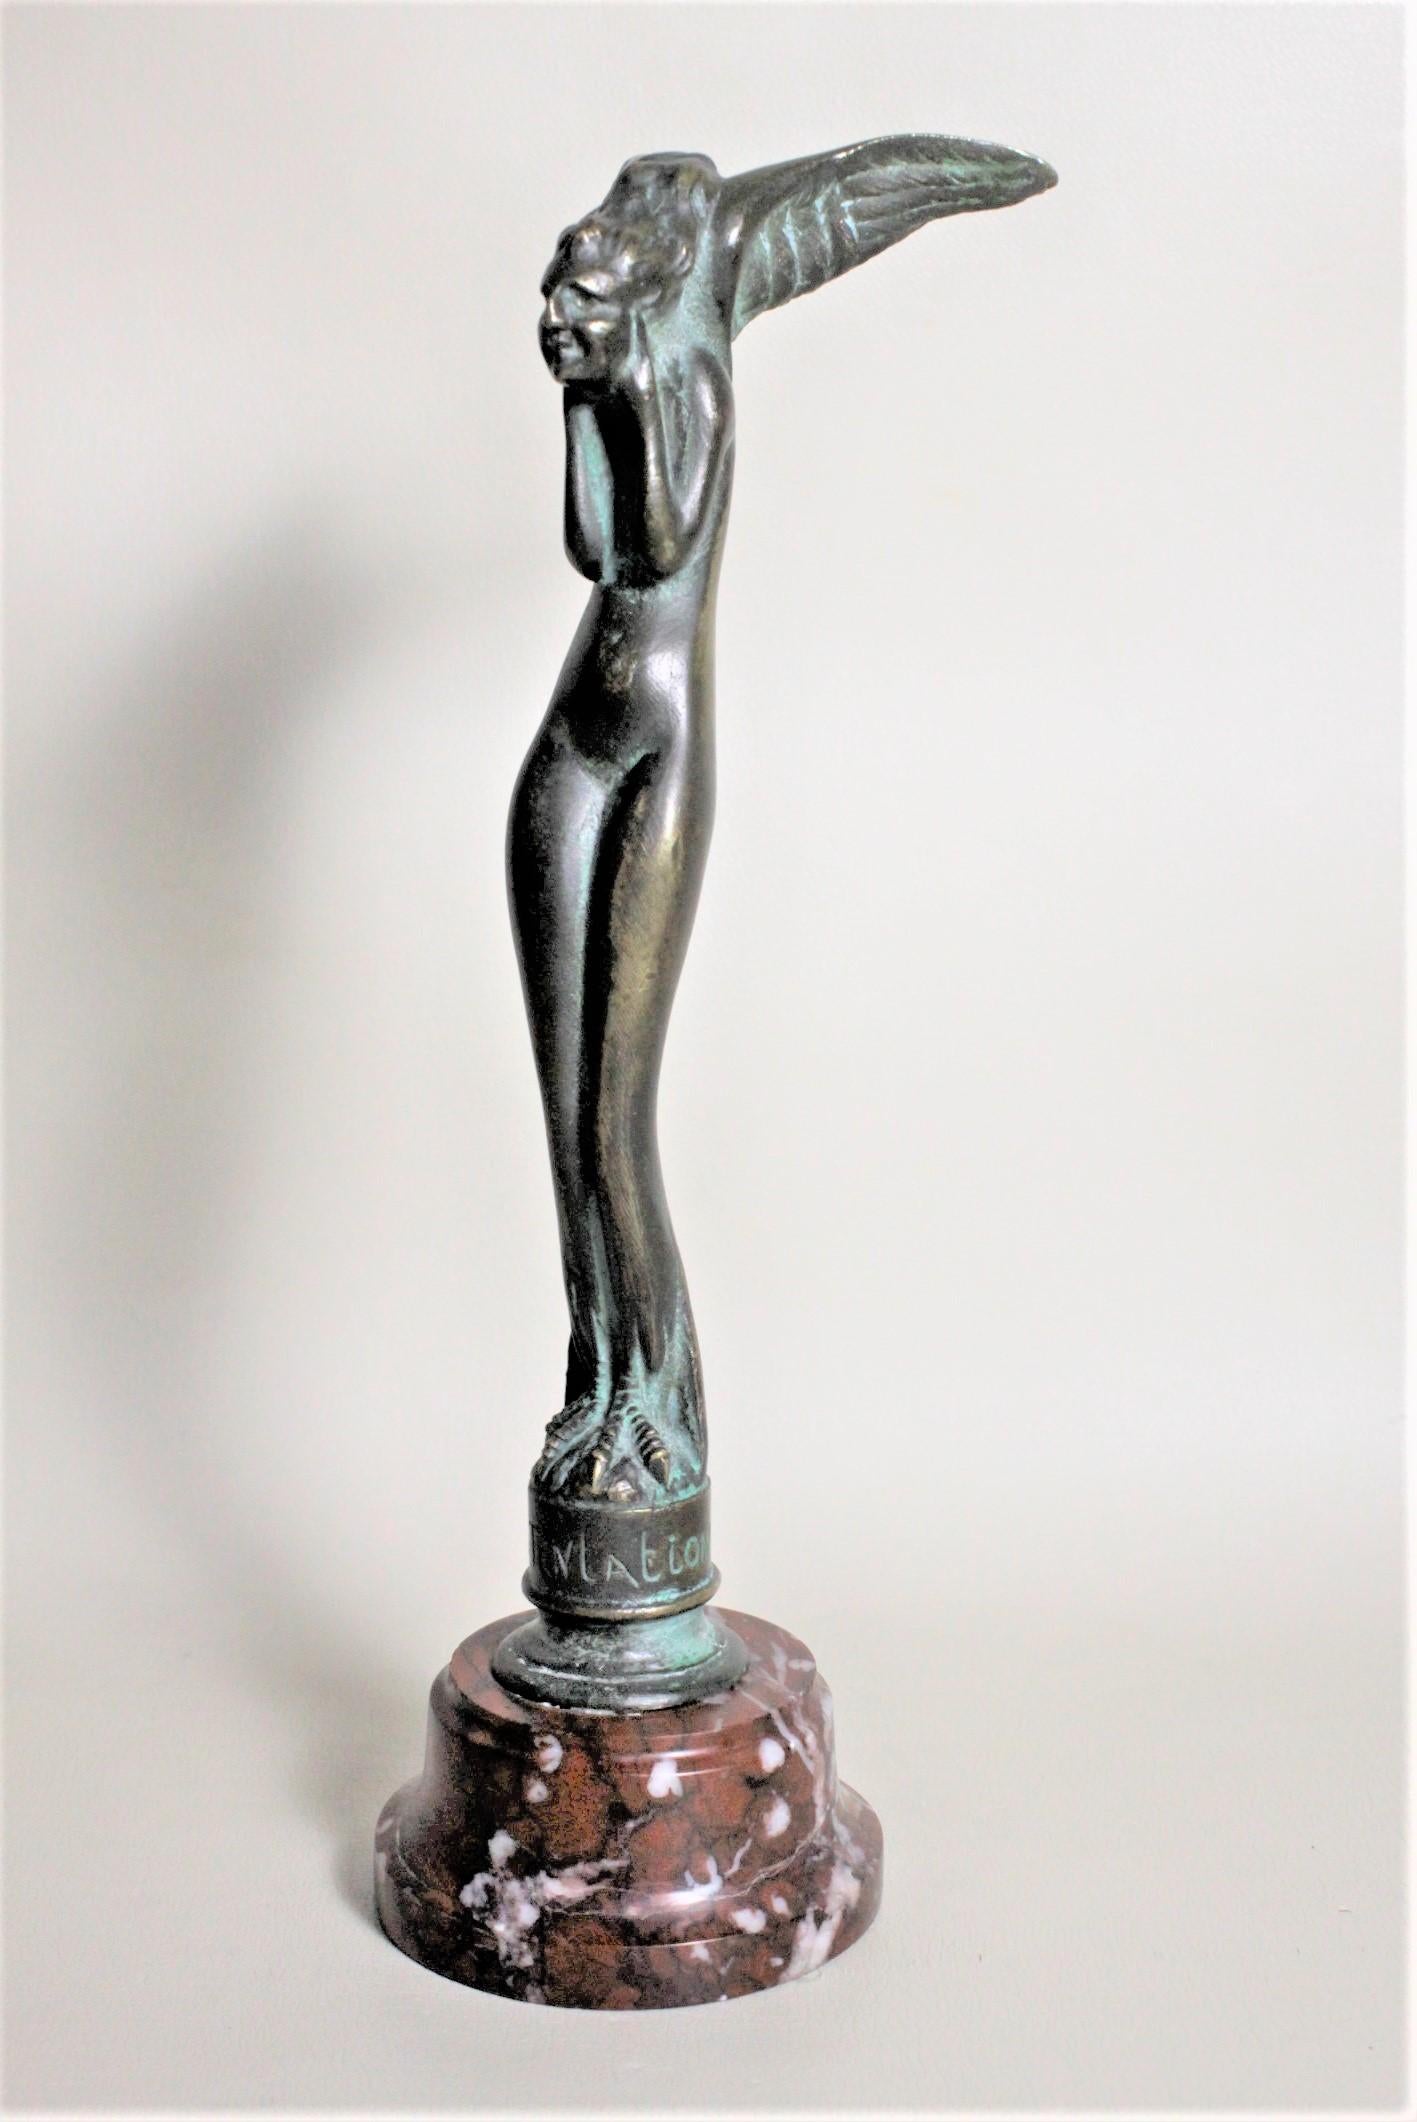 Diese patinierte Bronzeskulptur im Stil des Art déco wurde um 1920 von Serge Zelikson aus Frankreich geschaffen. Die Bronze ist kunstvoll gegossen und stellt das dar, was manche als Engel bezeichnen. Es handelt sich um einen nackten weiblichen